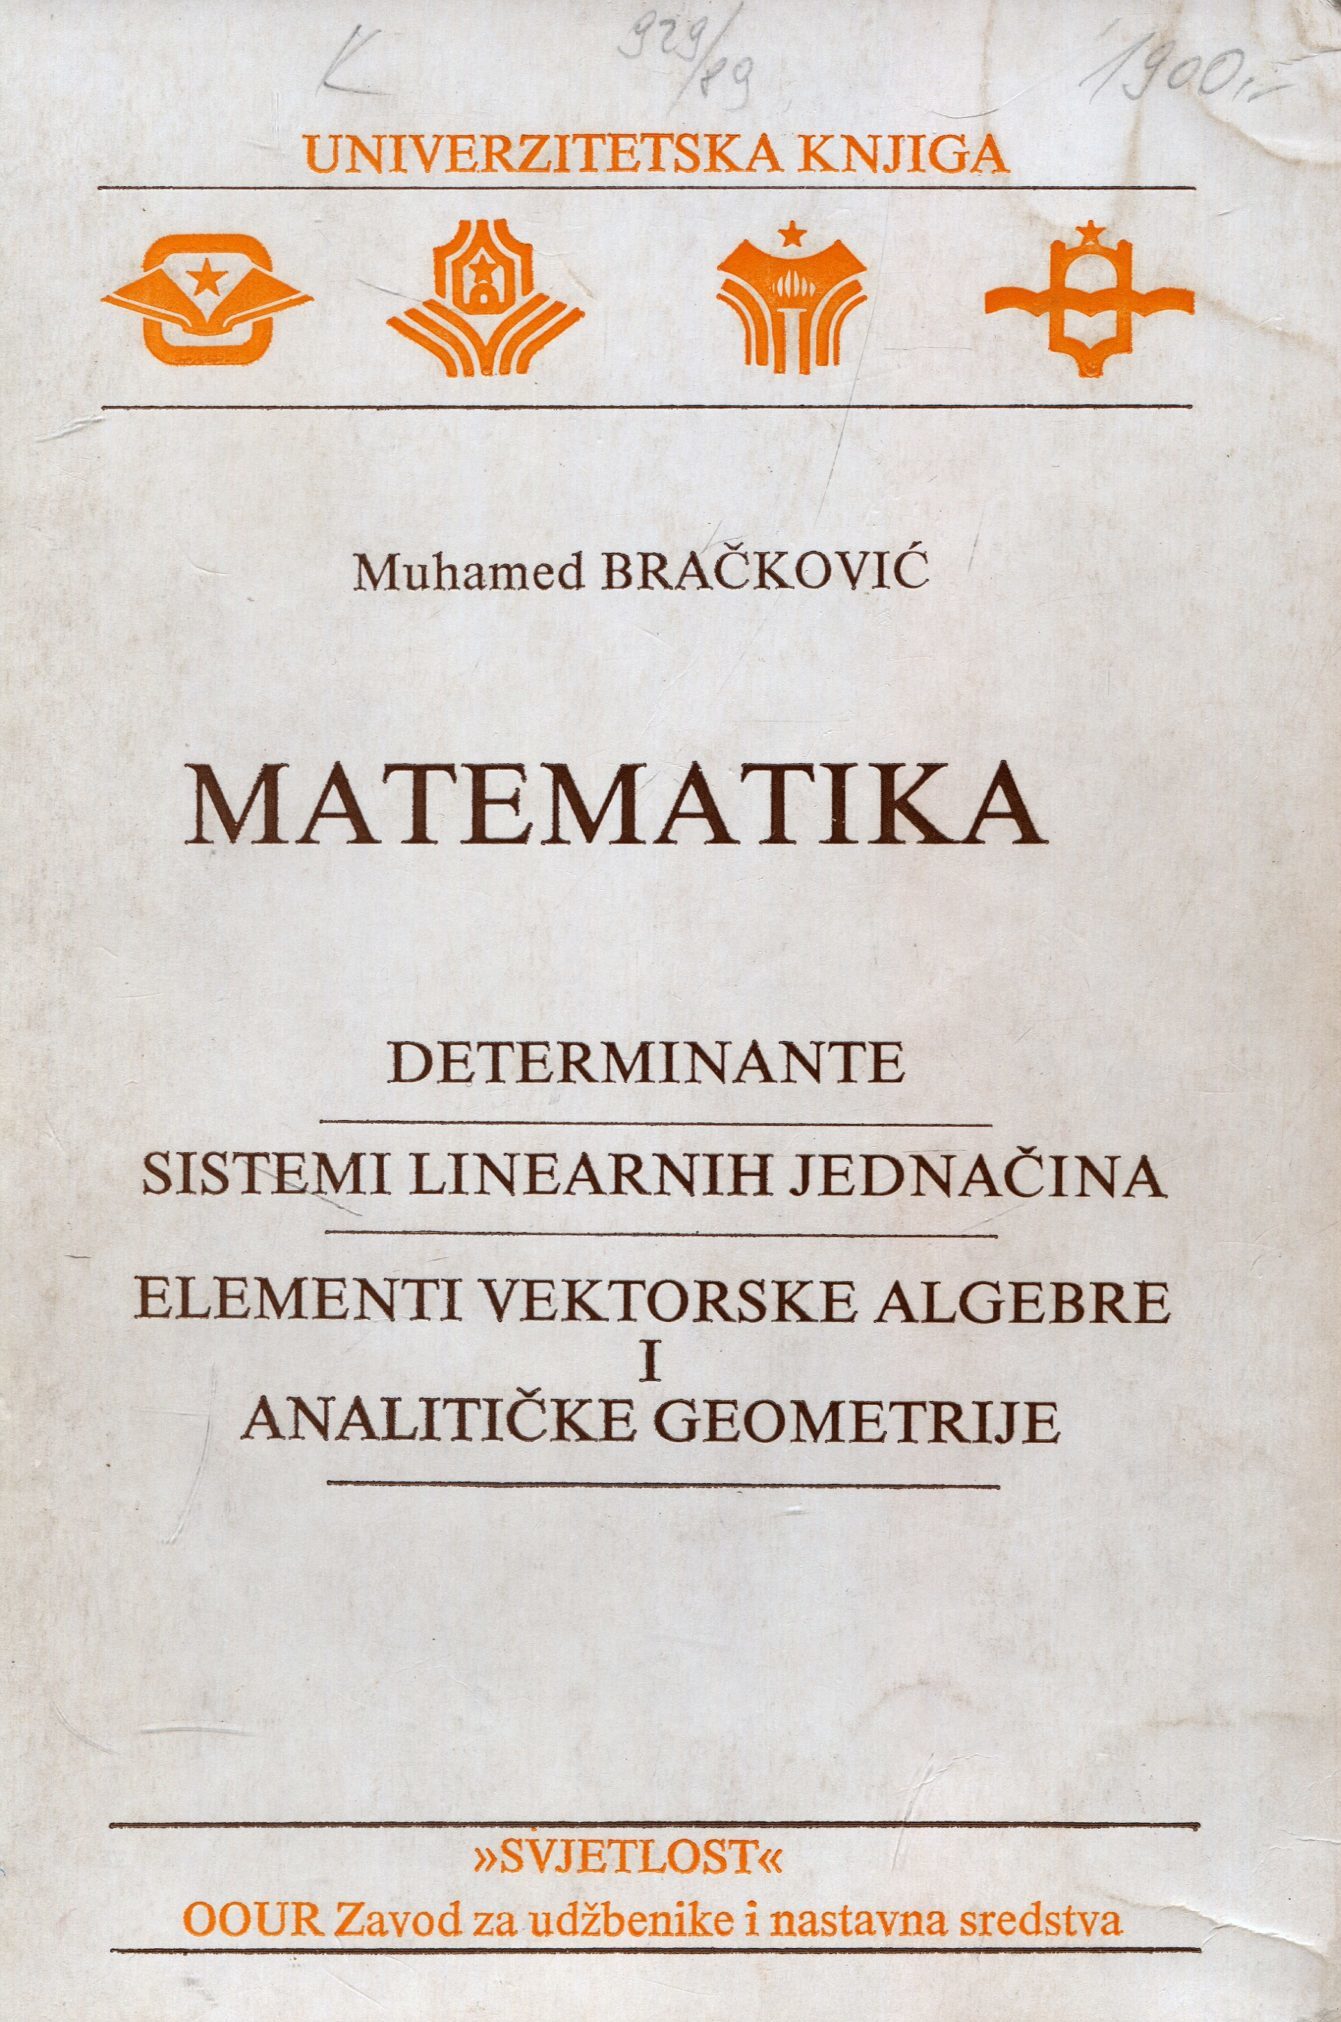 Matematika Muhamed Bračković